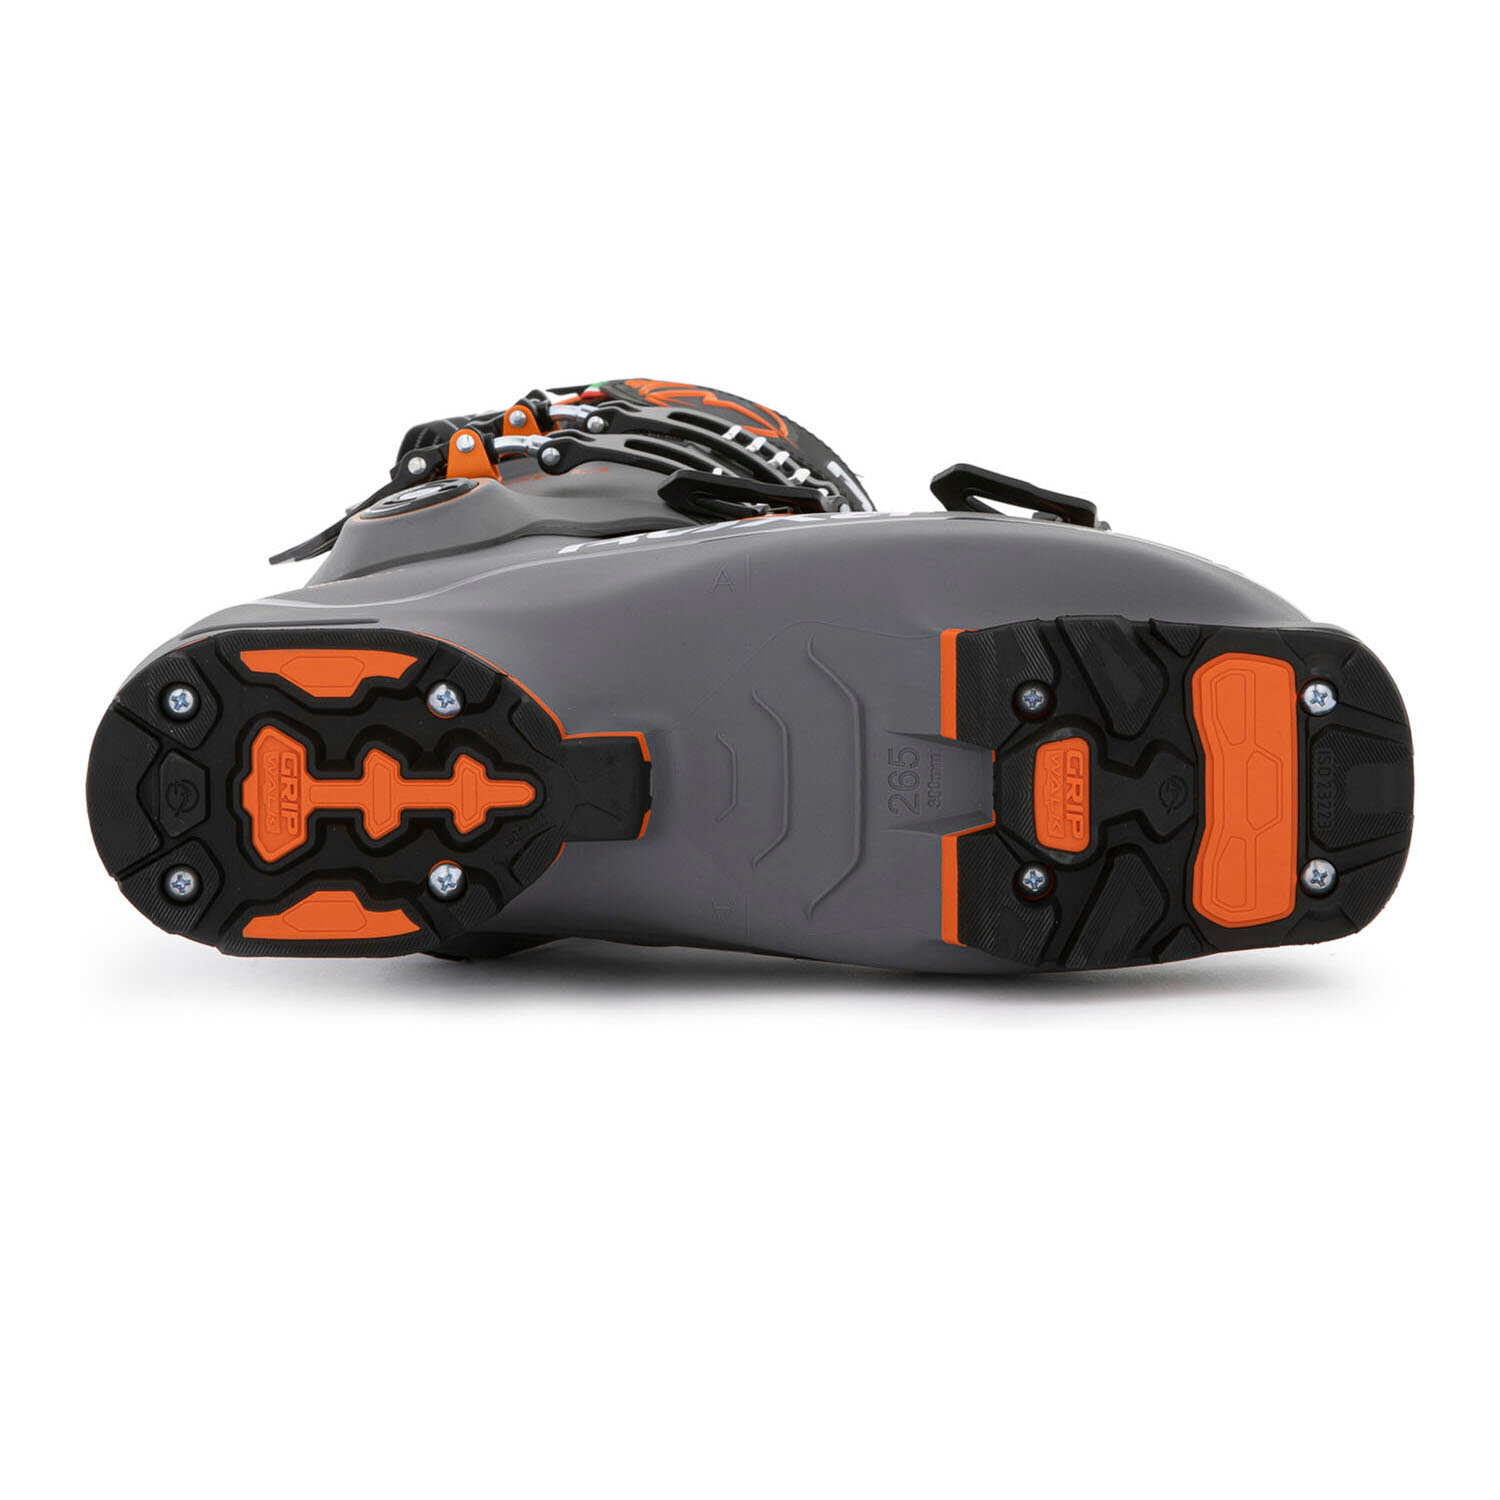 Горнолыжные ботинки ROXA Rfit Pro 120 Gw Dk Grey/Orange (см:29,5)